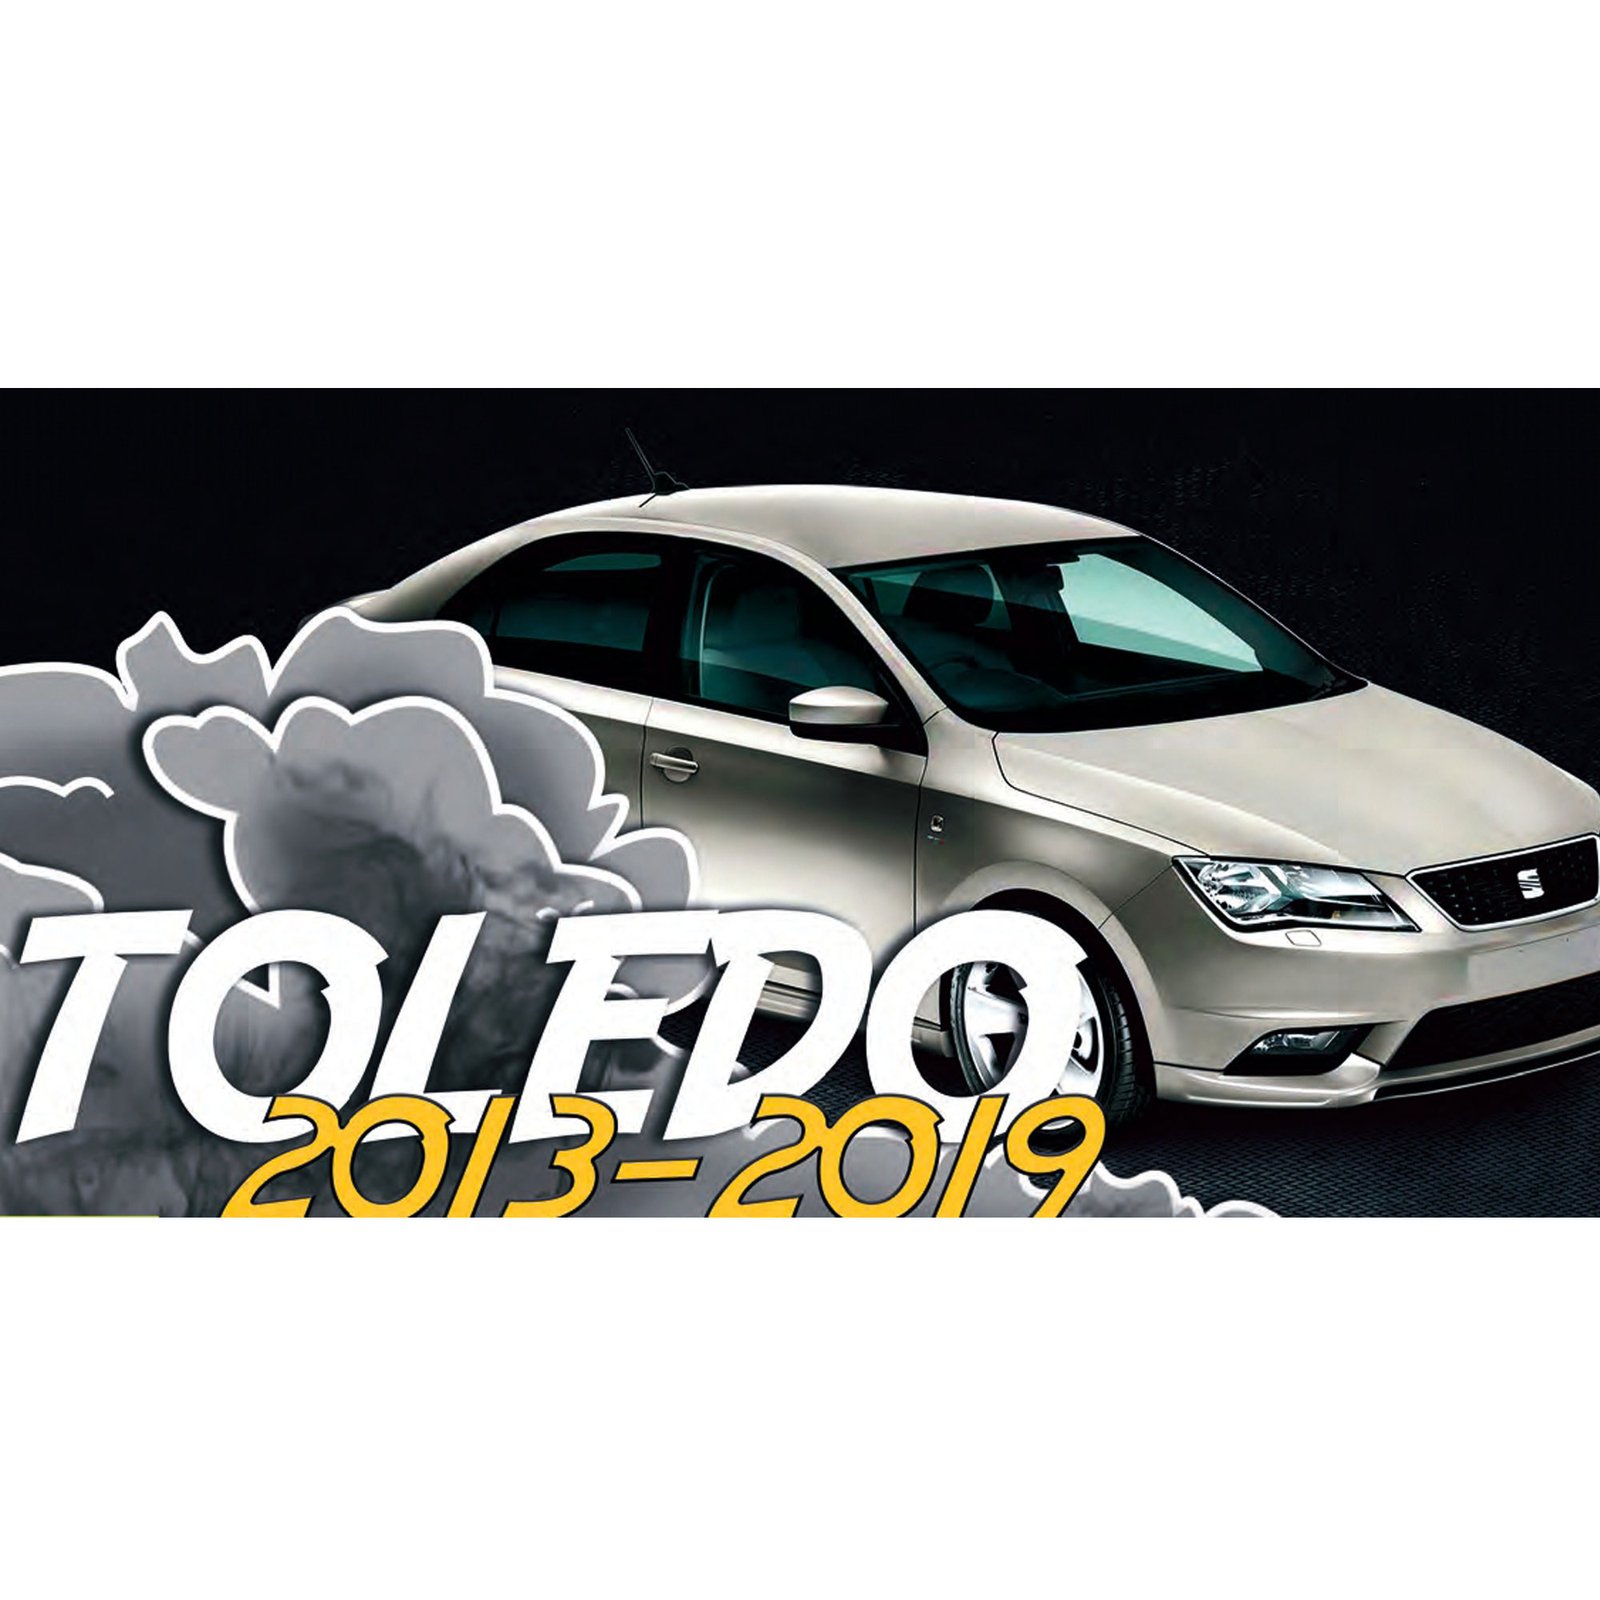 Faldón Derecho para Seat Toledo (2013-2019)